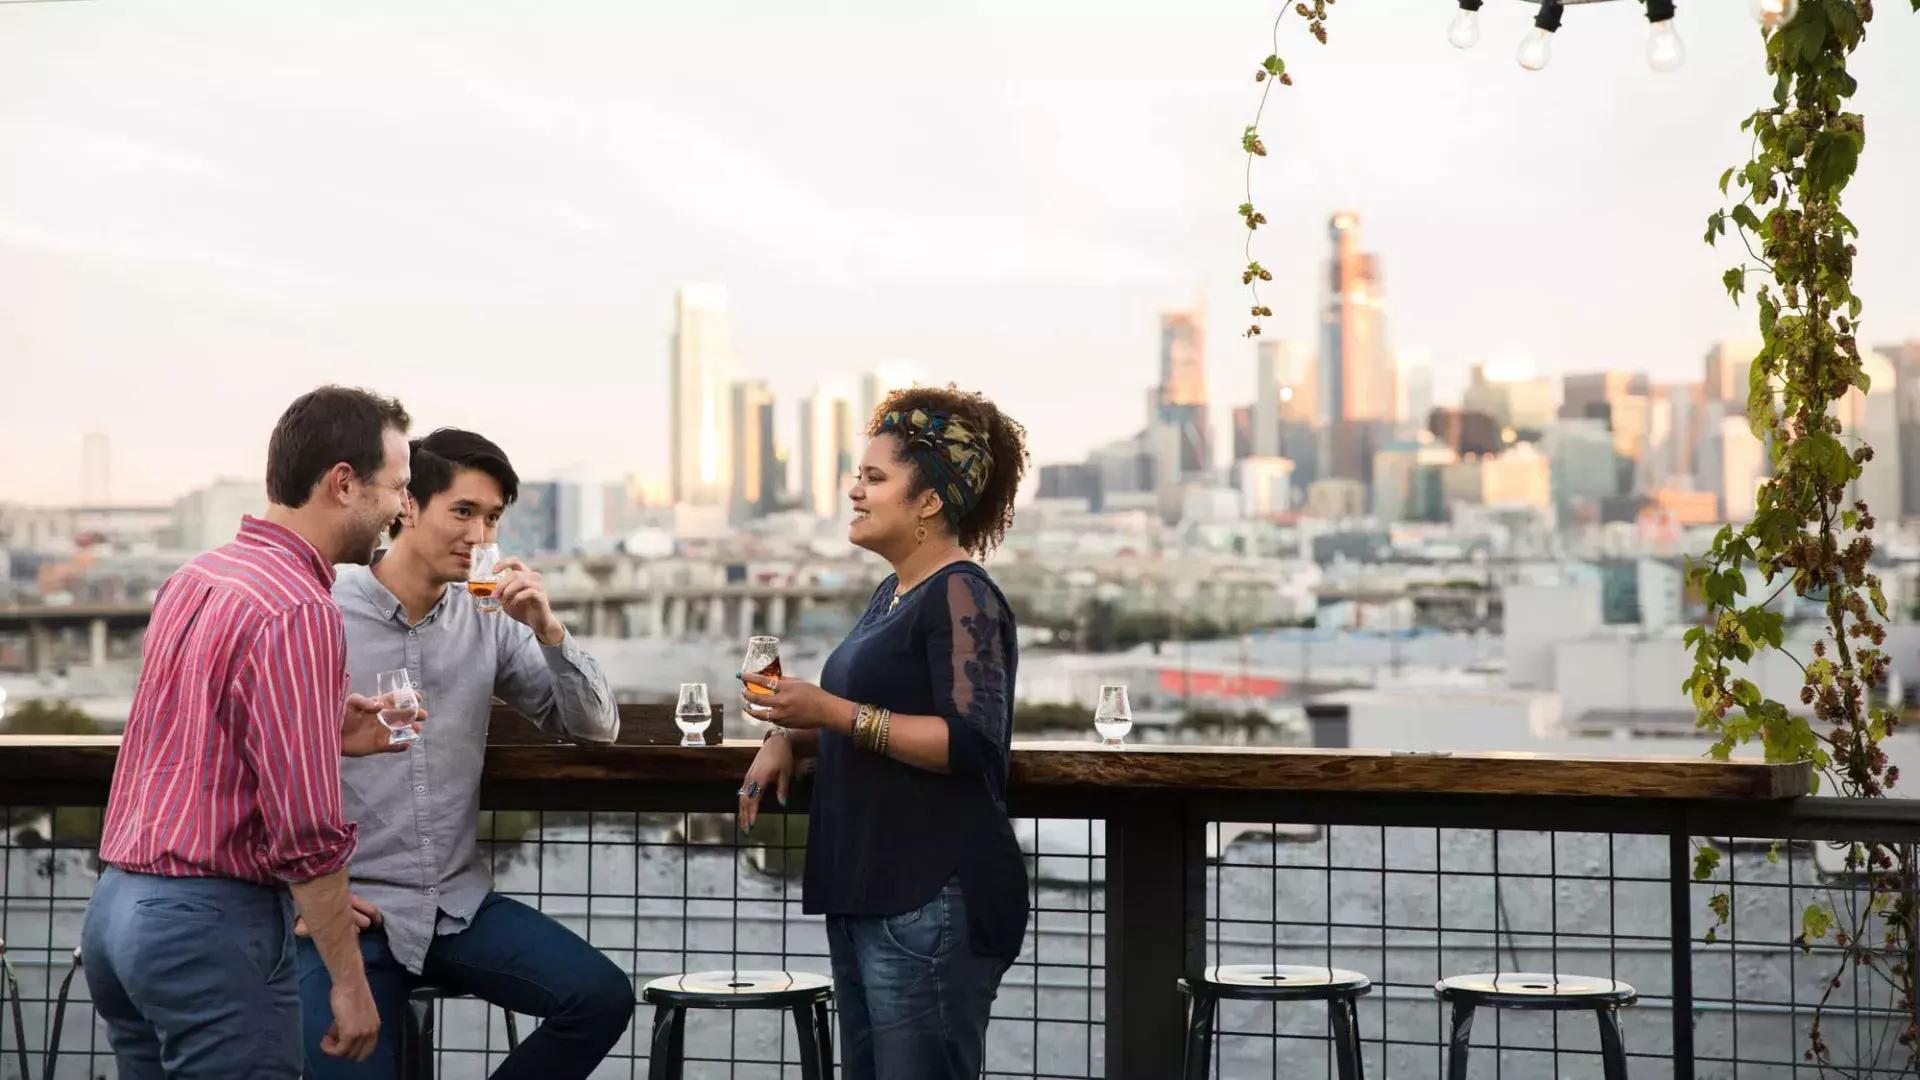 カリフォルニア州サンフランシスコにあるアンカー・ディスティリング社の屋上デッキにある屋外テーブルの周りに3人が集まっています。